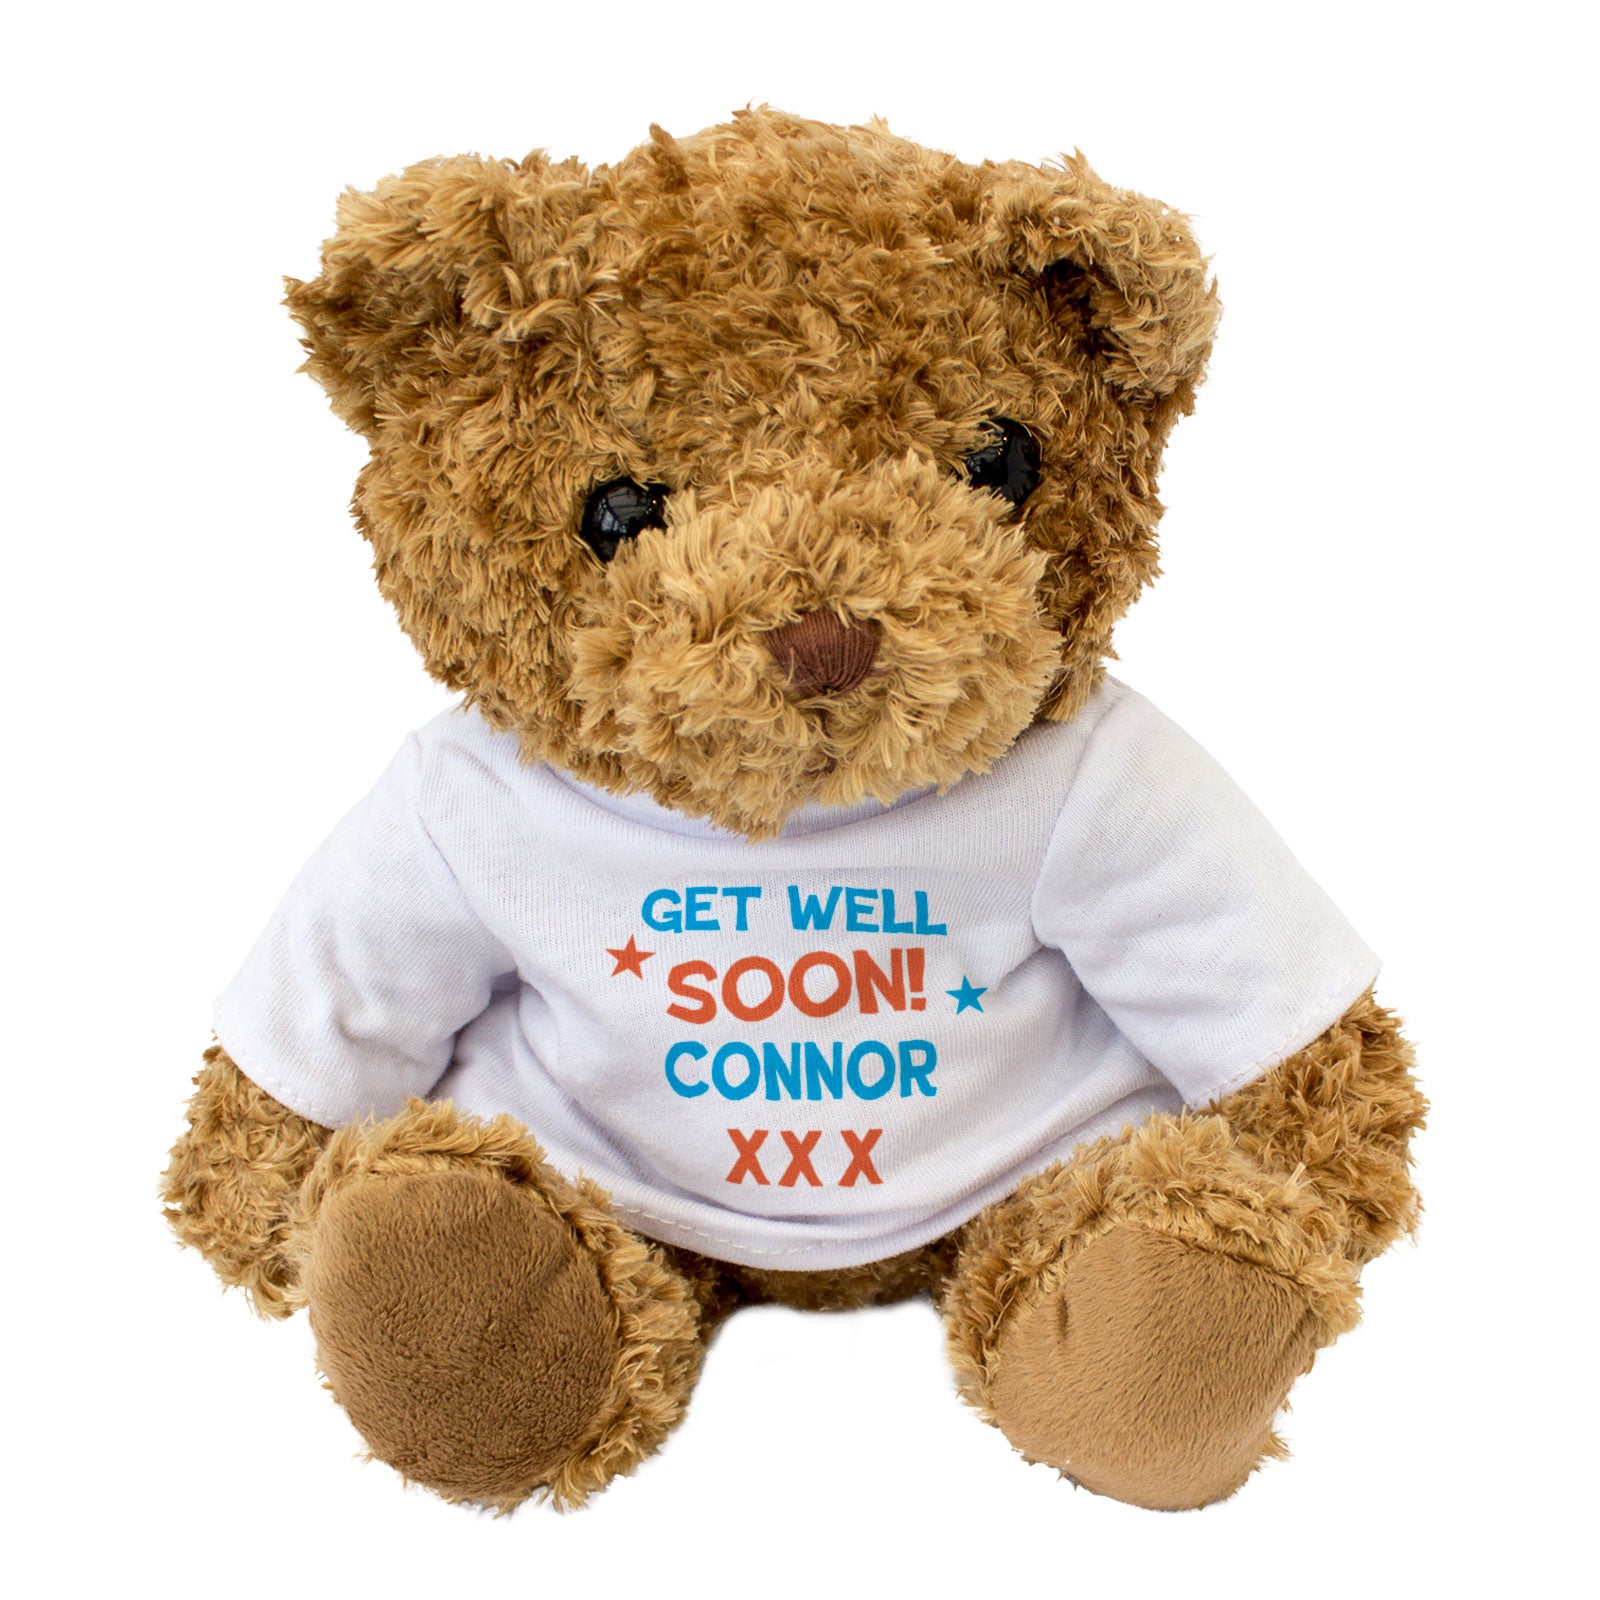 Get Well Soon Connor - Teddy Bear